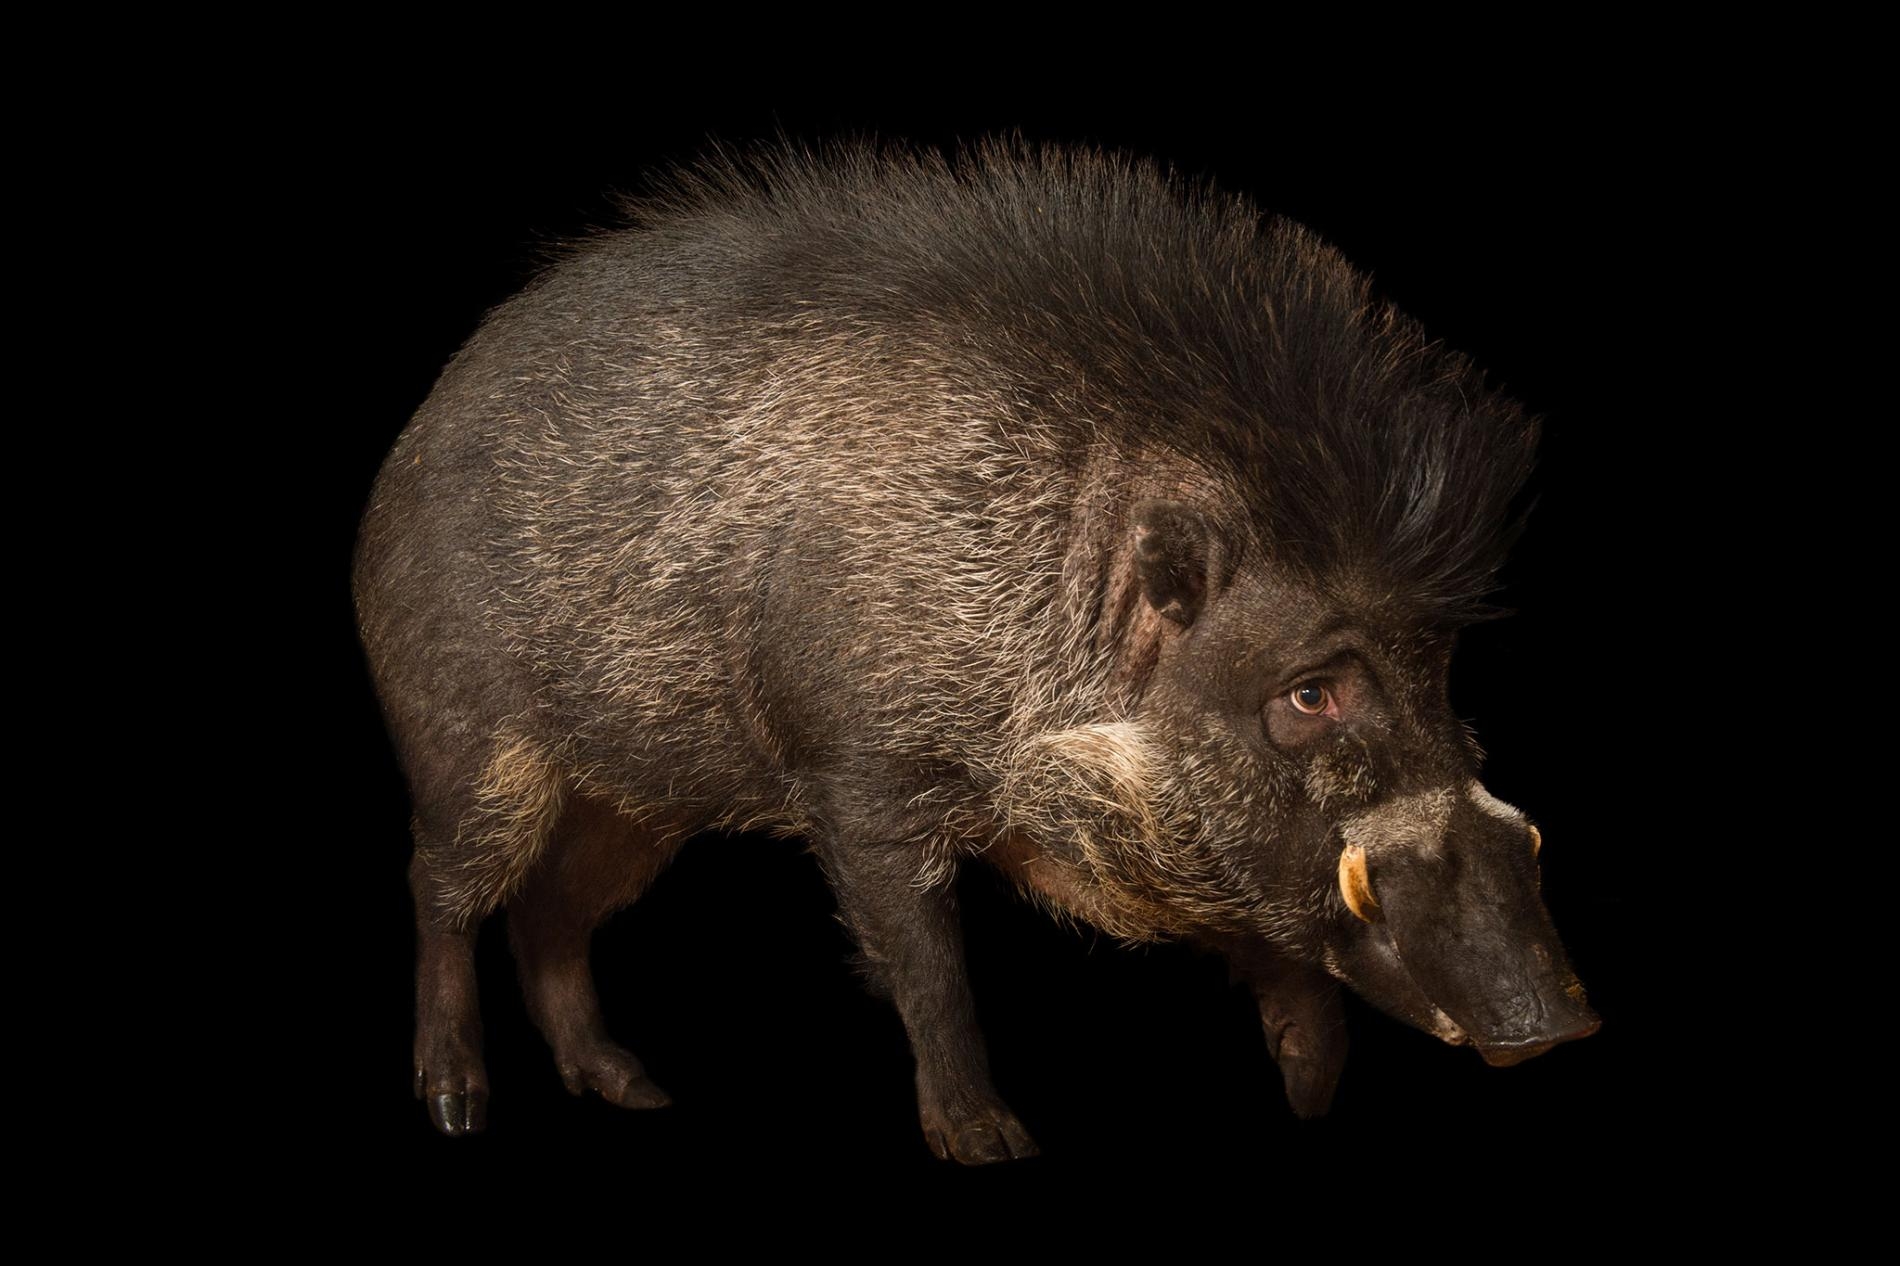 目前養在圈養環境中的捲毛野豬（<i>Sus cebifrons</i>, 圖為明尼蘇達動物園的捲毛野豬）大約只有300頭。牠們在野外的族群狀況不明。PHOTOGRAPH BY JOEL SARTORE, NATIONAL GEOGRAPHIC PHOTO ARK